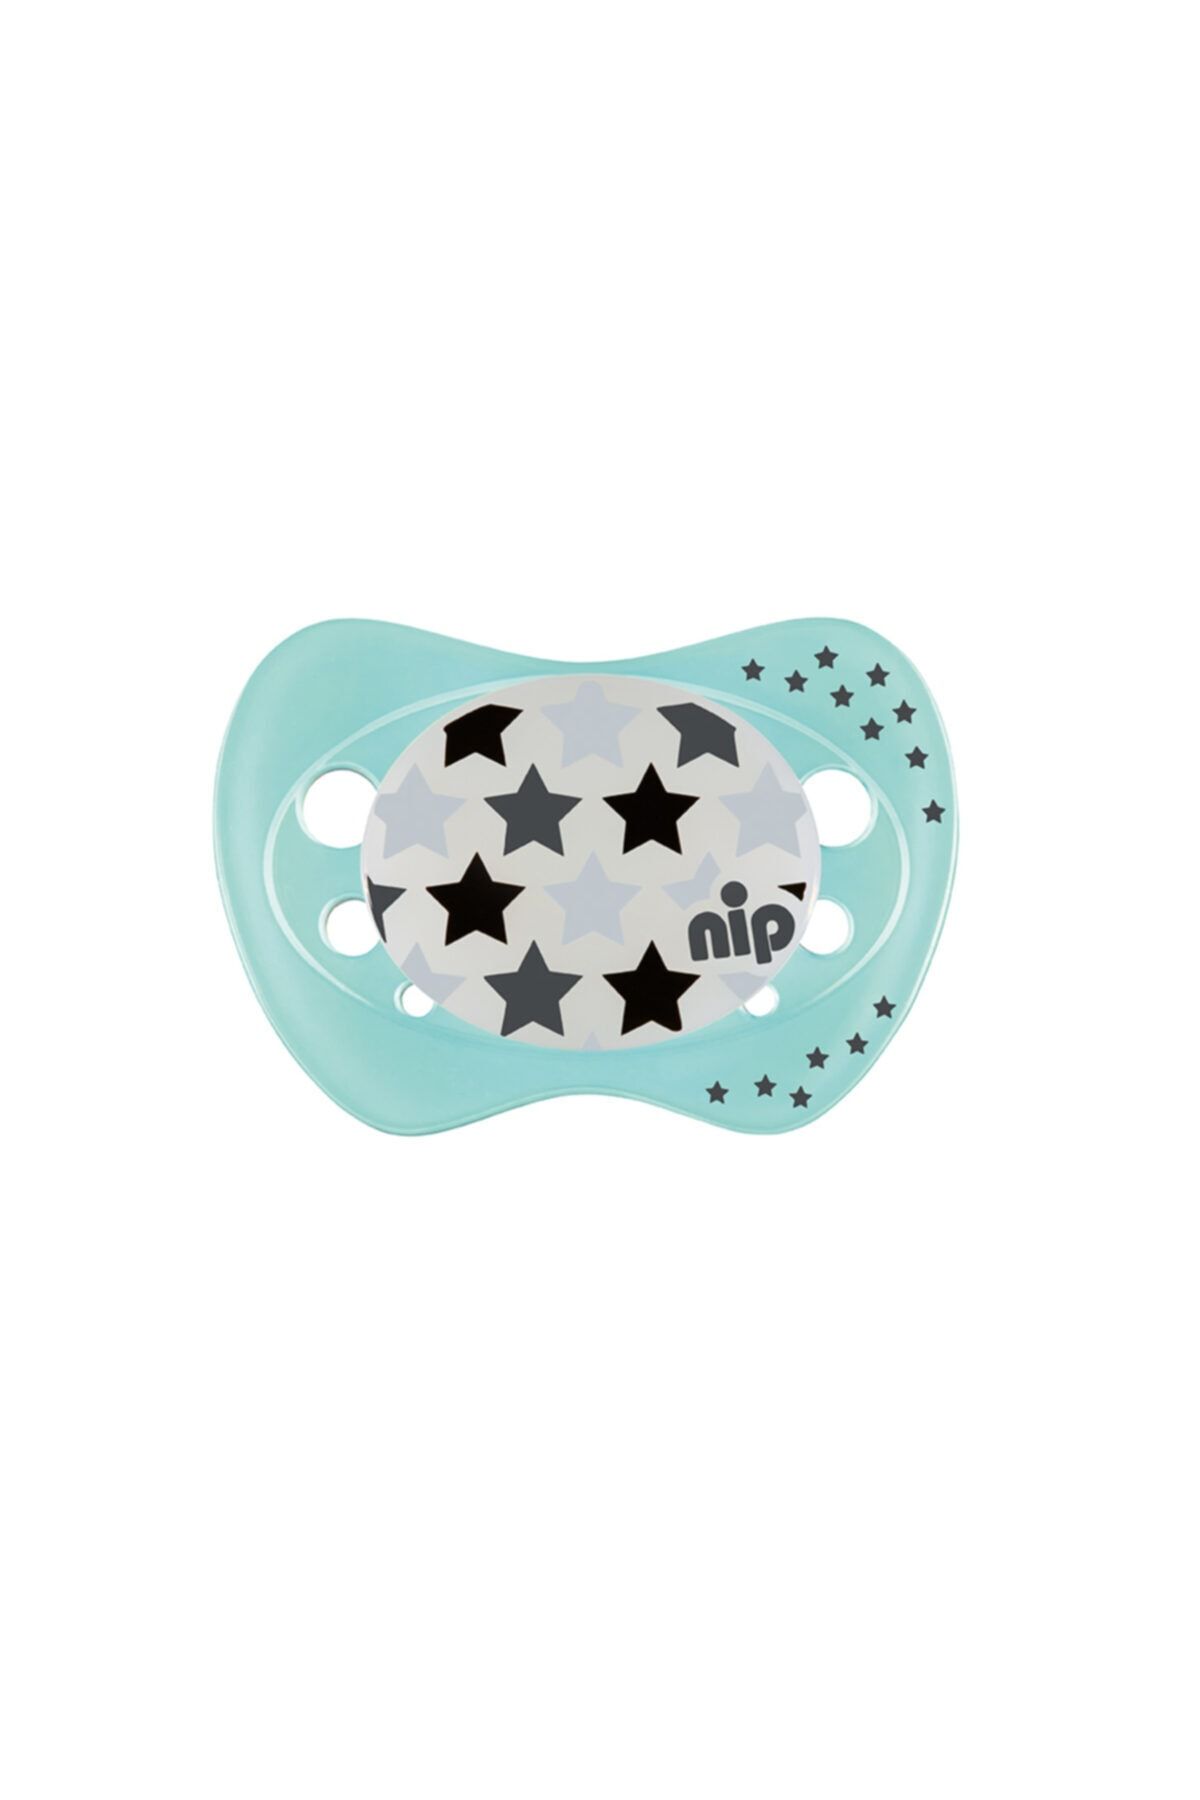 Nip Erkek Bebek Renkli  Hipopotam & Yıldız Night Silikon Gece Emziği 5-18 Ay